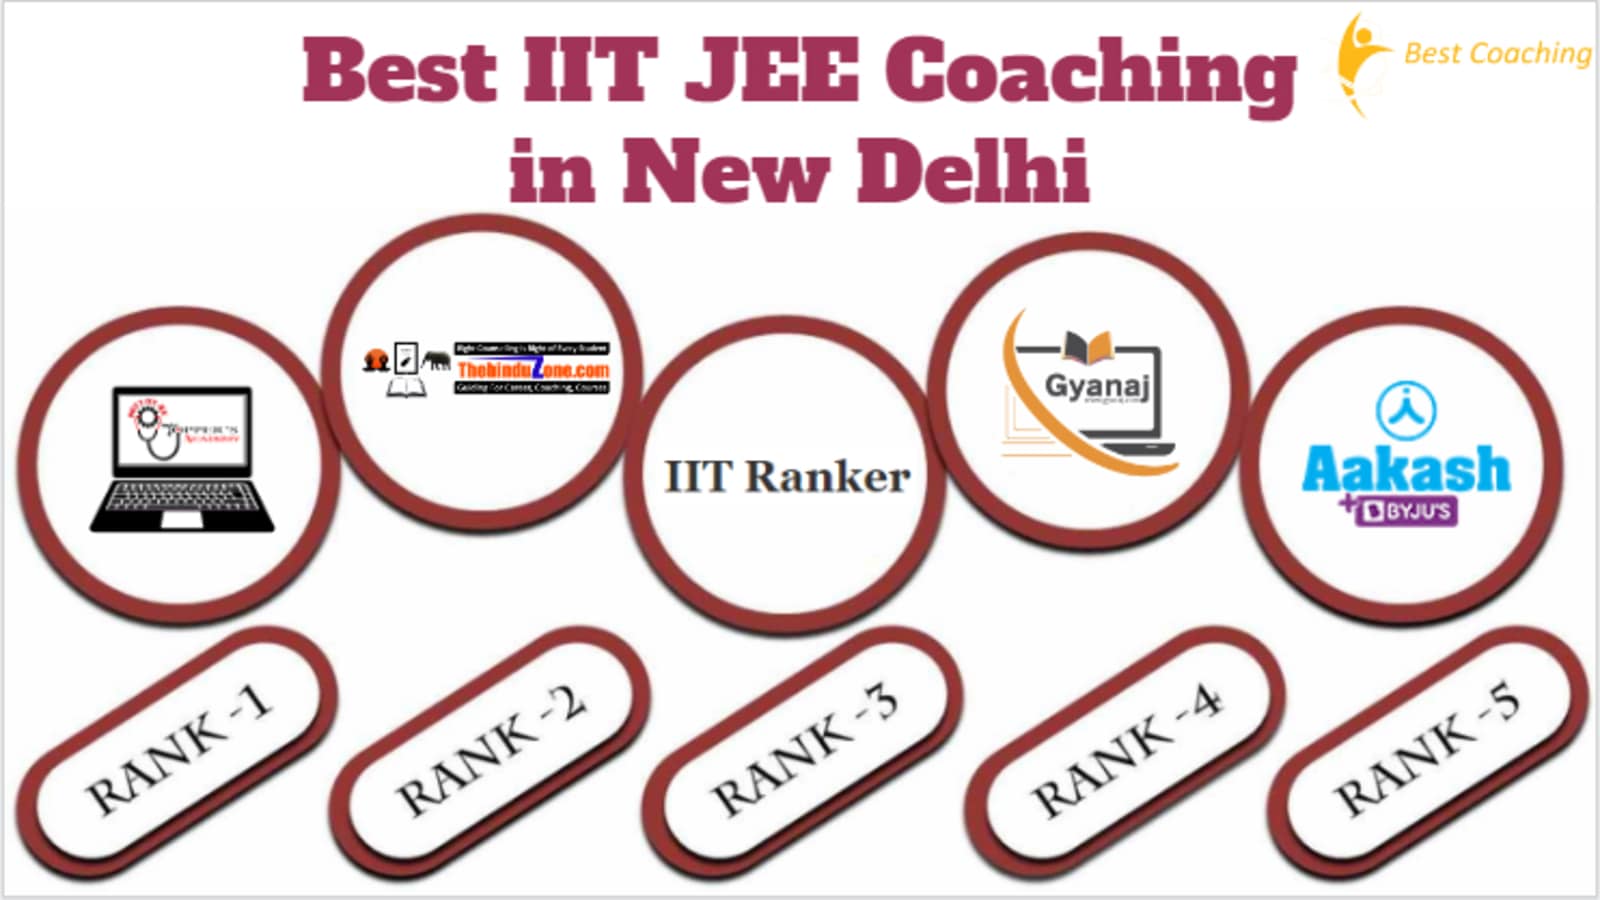 Best IIT JEE Coaching in New Delhi